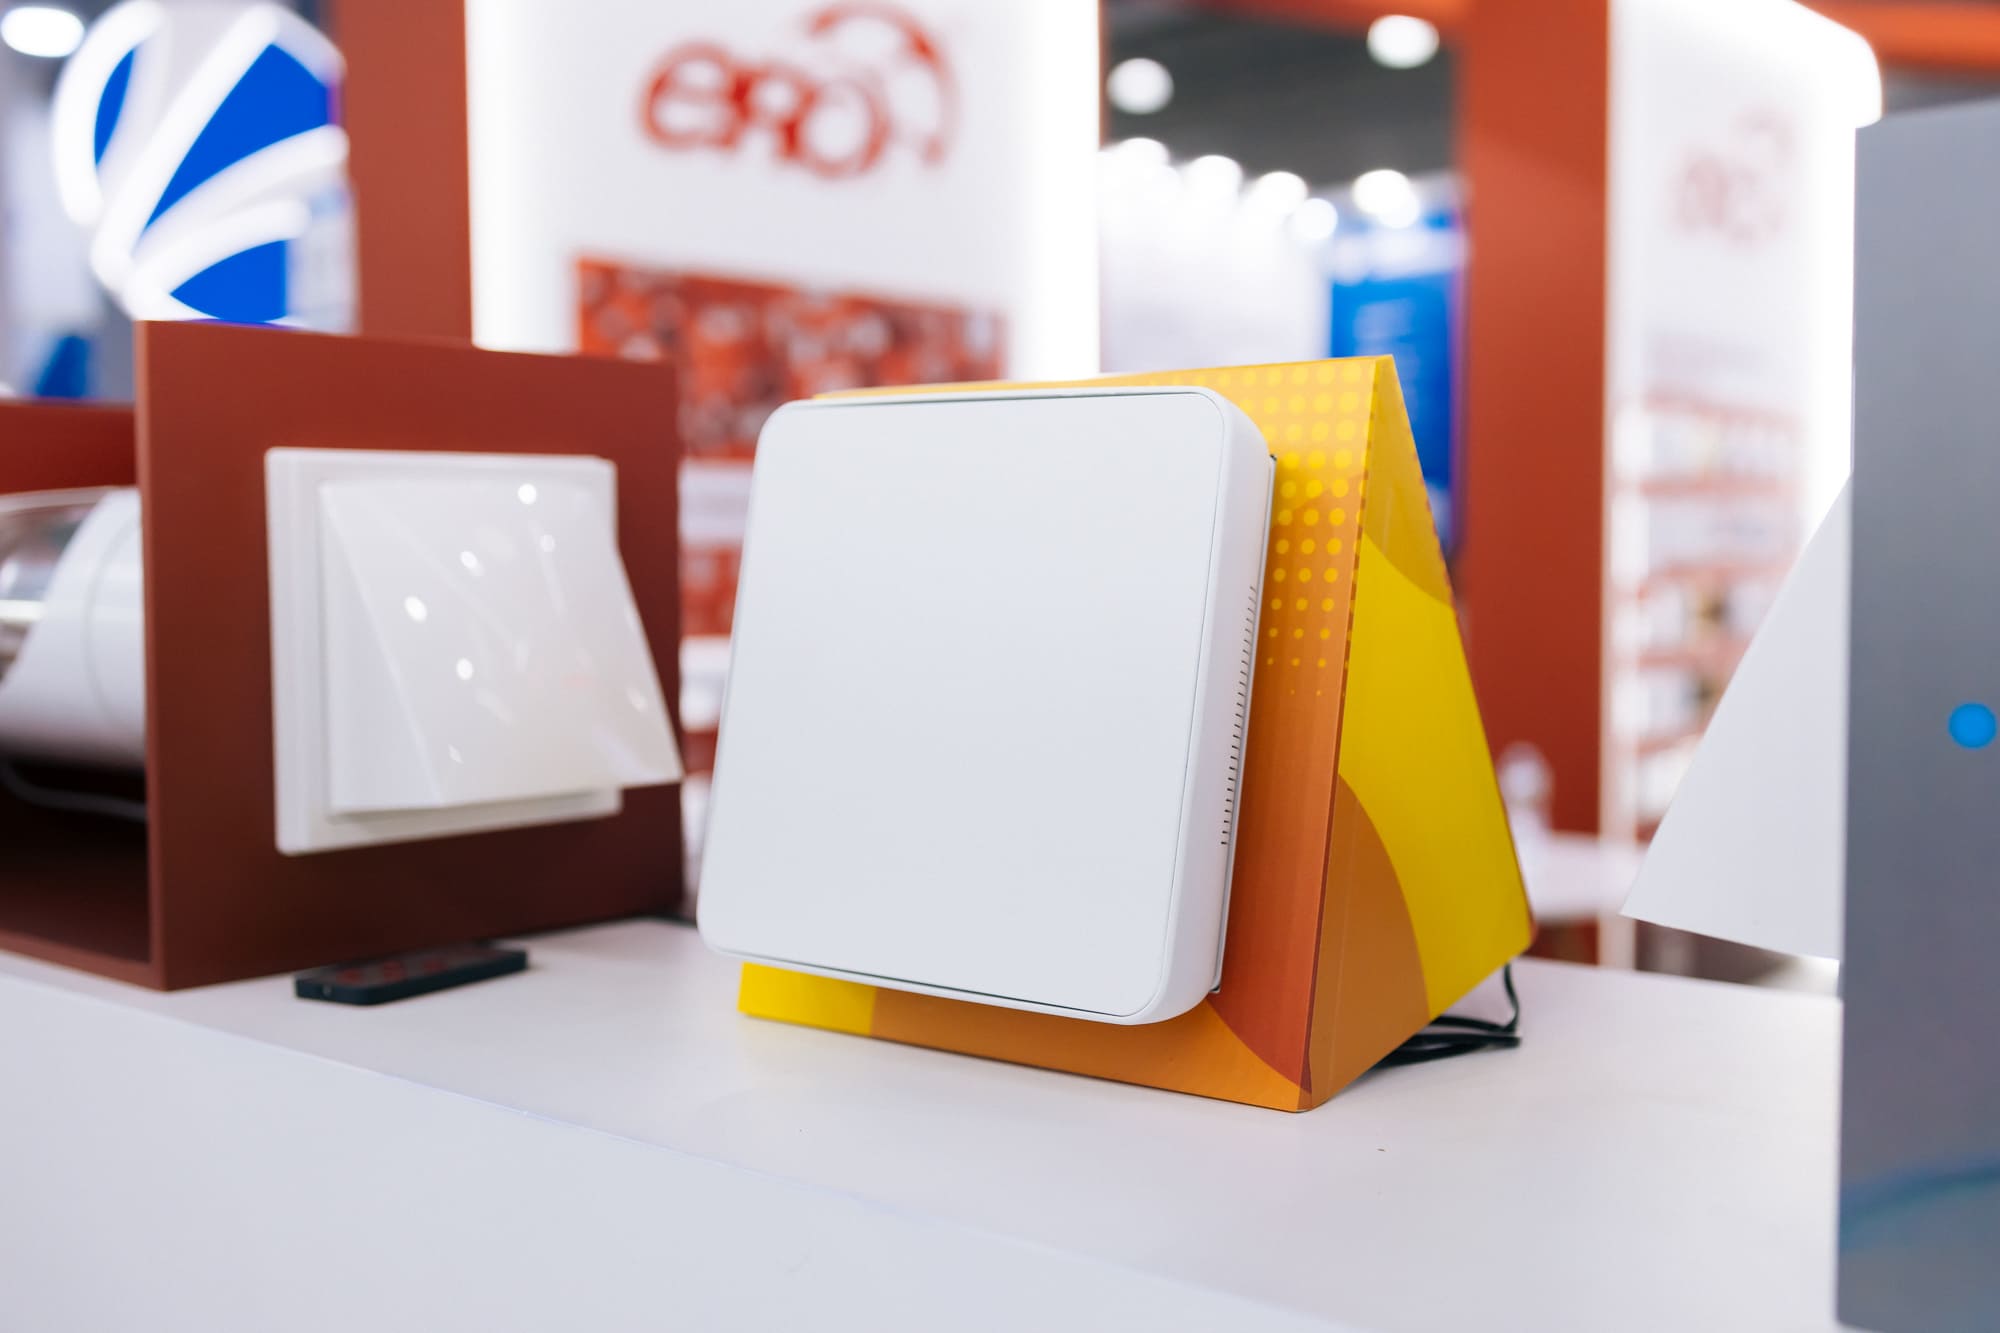 ERA Group представила новые модели вентиляторов на выставке AIRVent